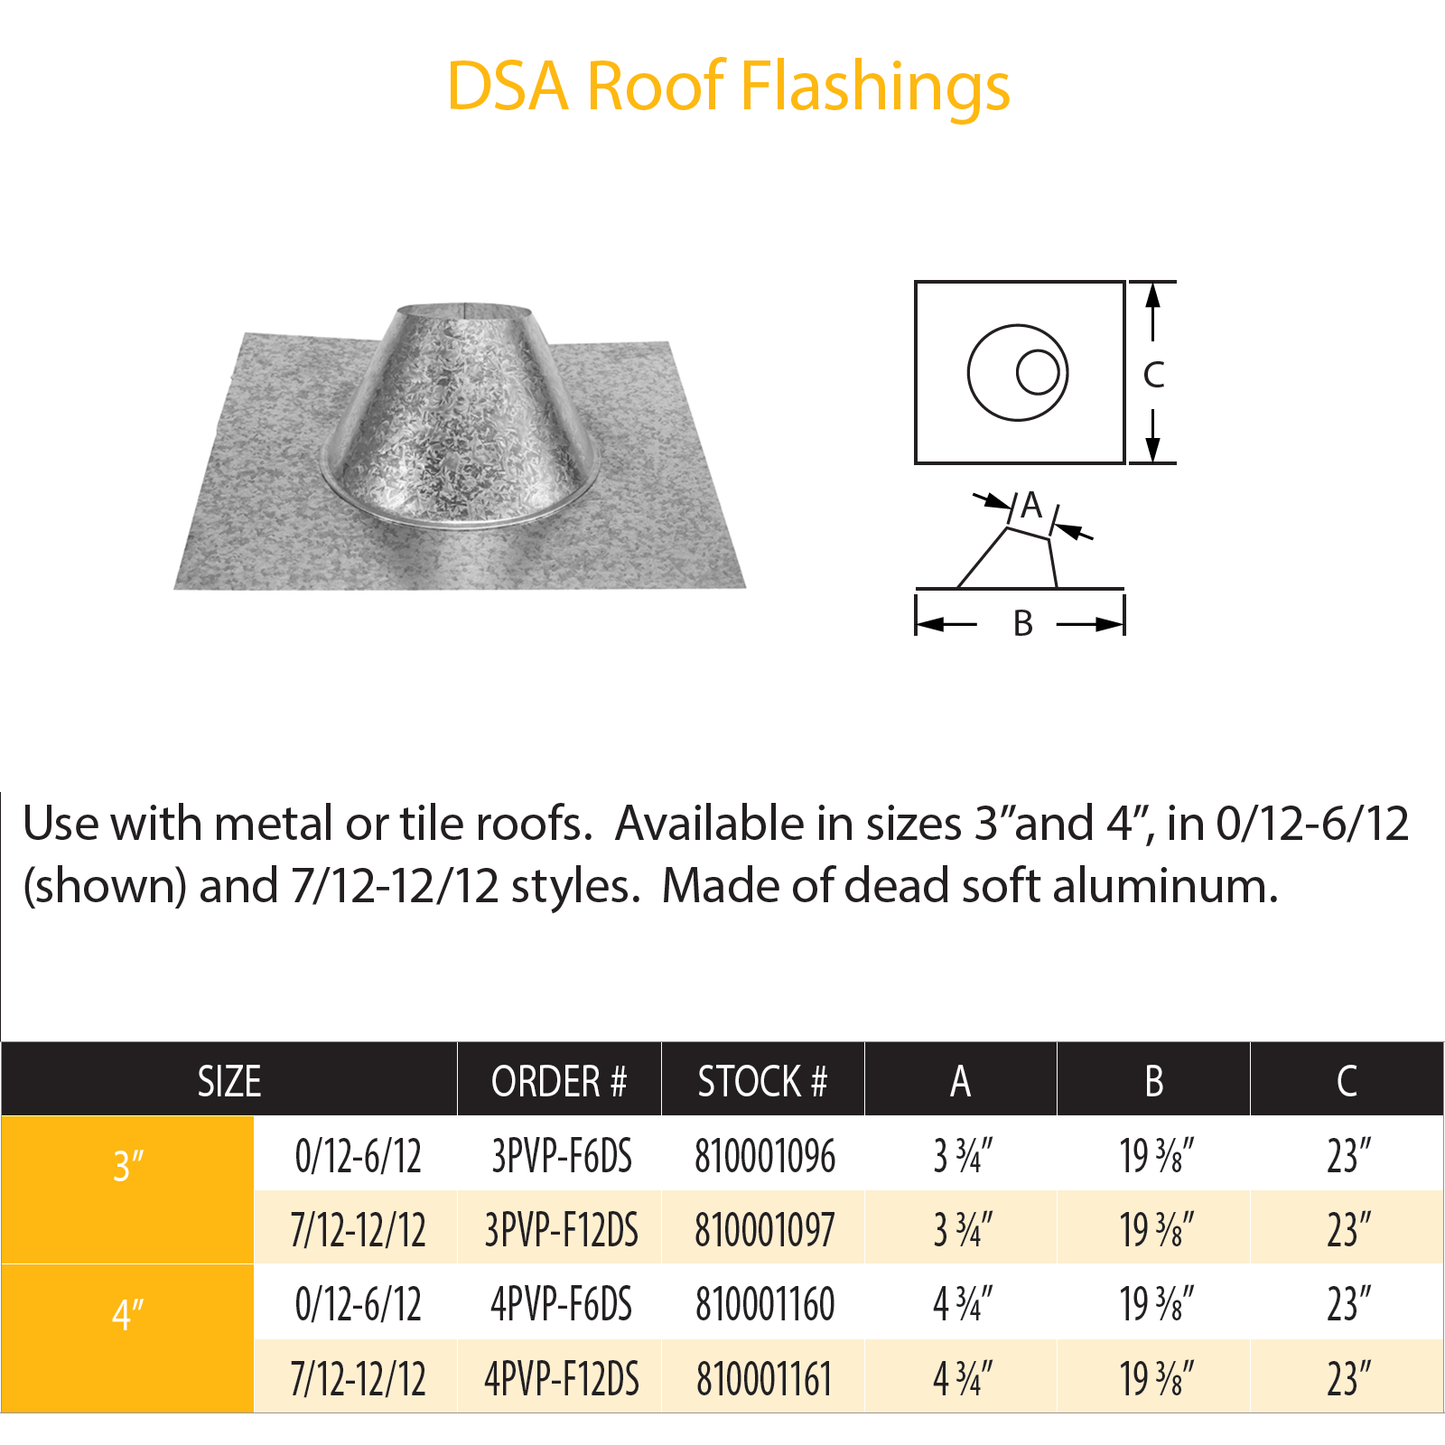 DuraVent Pellet Vent Pro DSA Roof Flashing 0/12 - 6/12 | 4PVP-F6DS